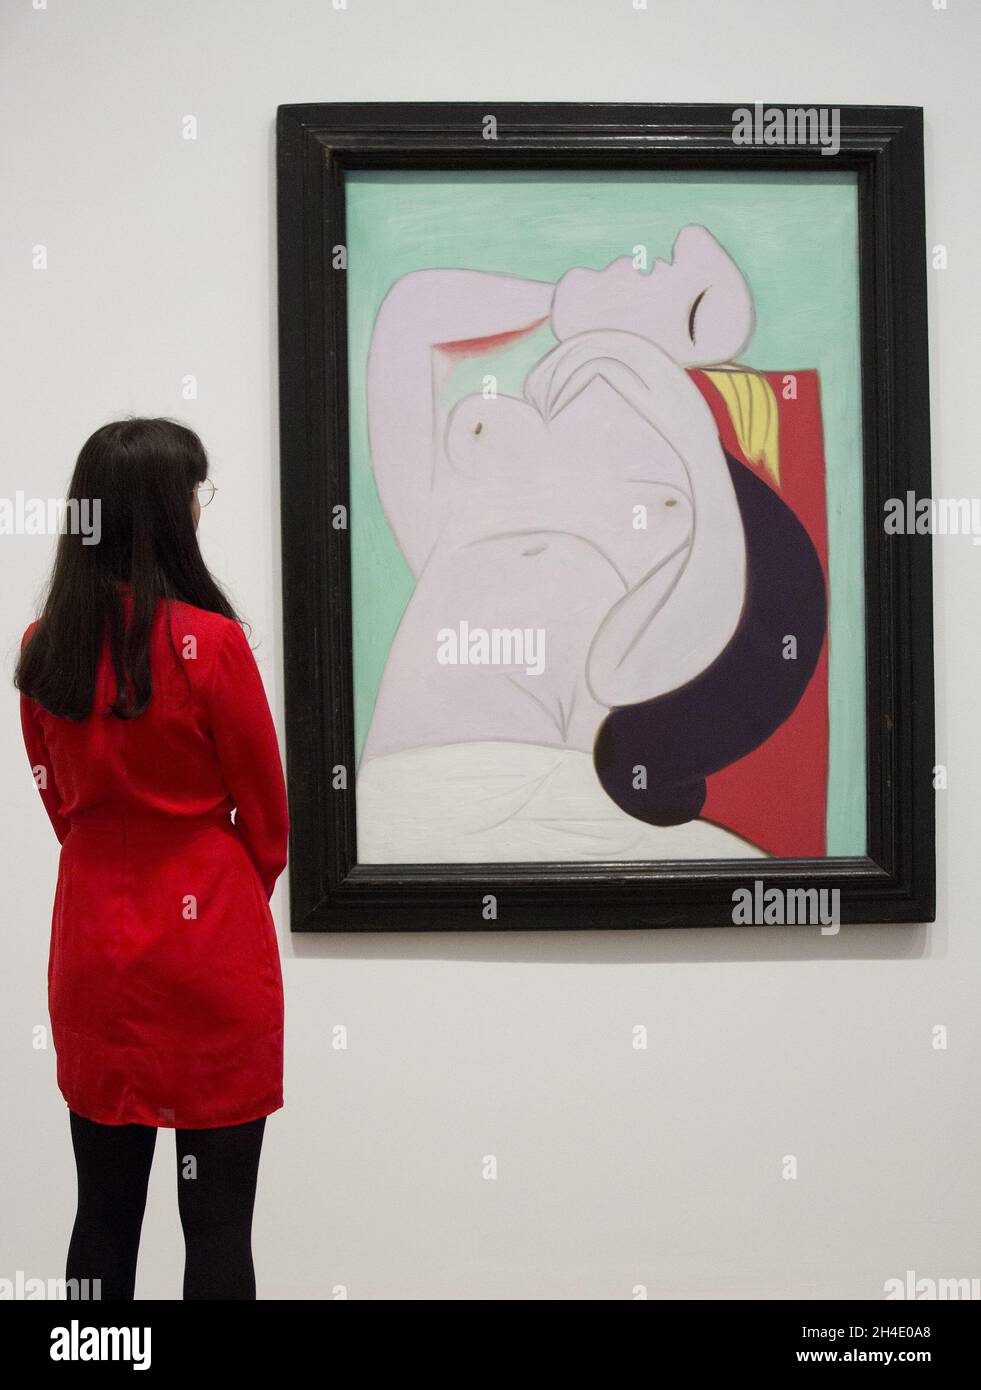 Une femme regardant le sommeil de Pablo Picasso, 1932, pendant un aperçu de l'exposition Picasso 1932 - Amour, gloire, tragédie à Tate Modern à Londres.Photo datée du mardi 6 mars 2018.Crédit photo devrait se lire: Isabel Infantes / EMPICS Entertainment. Banque D'Images